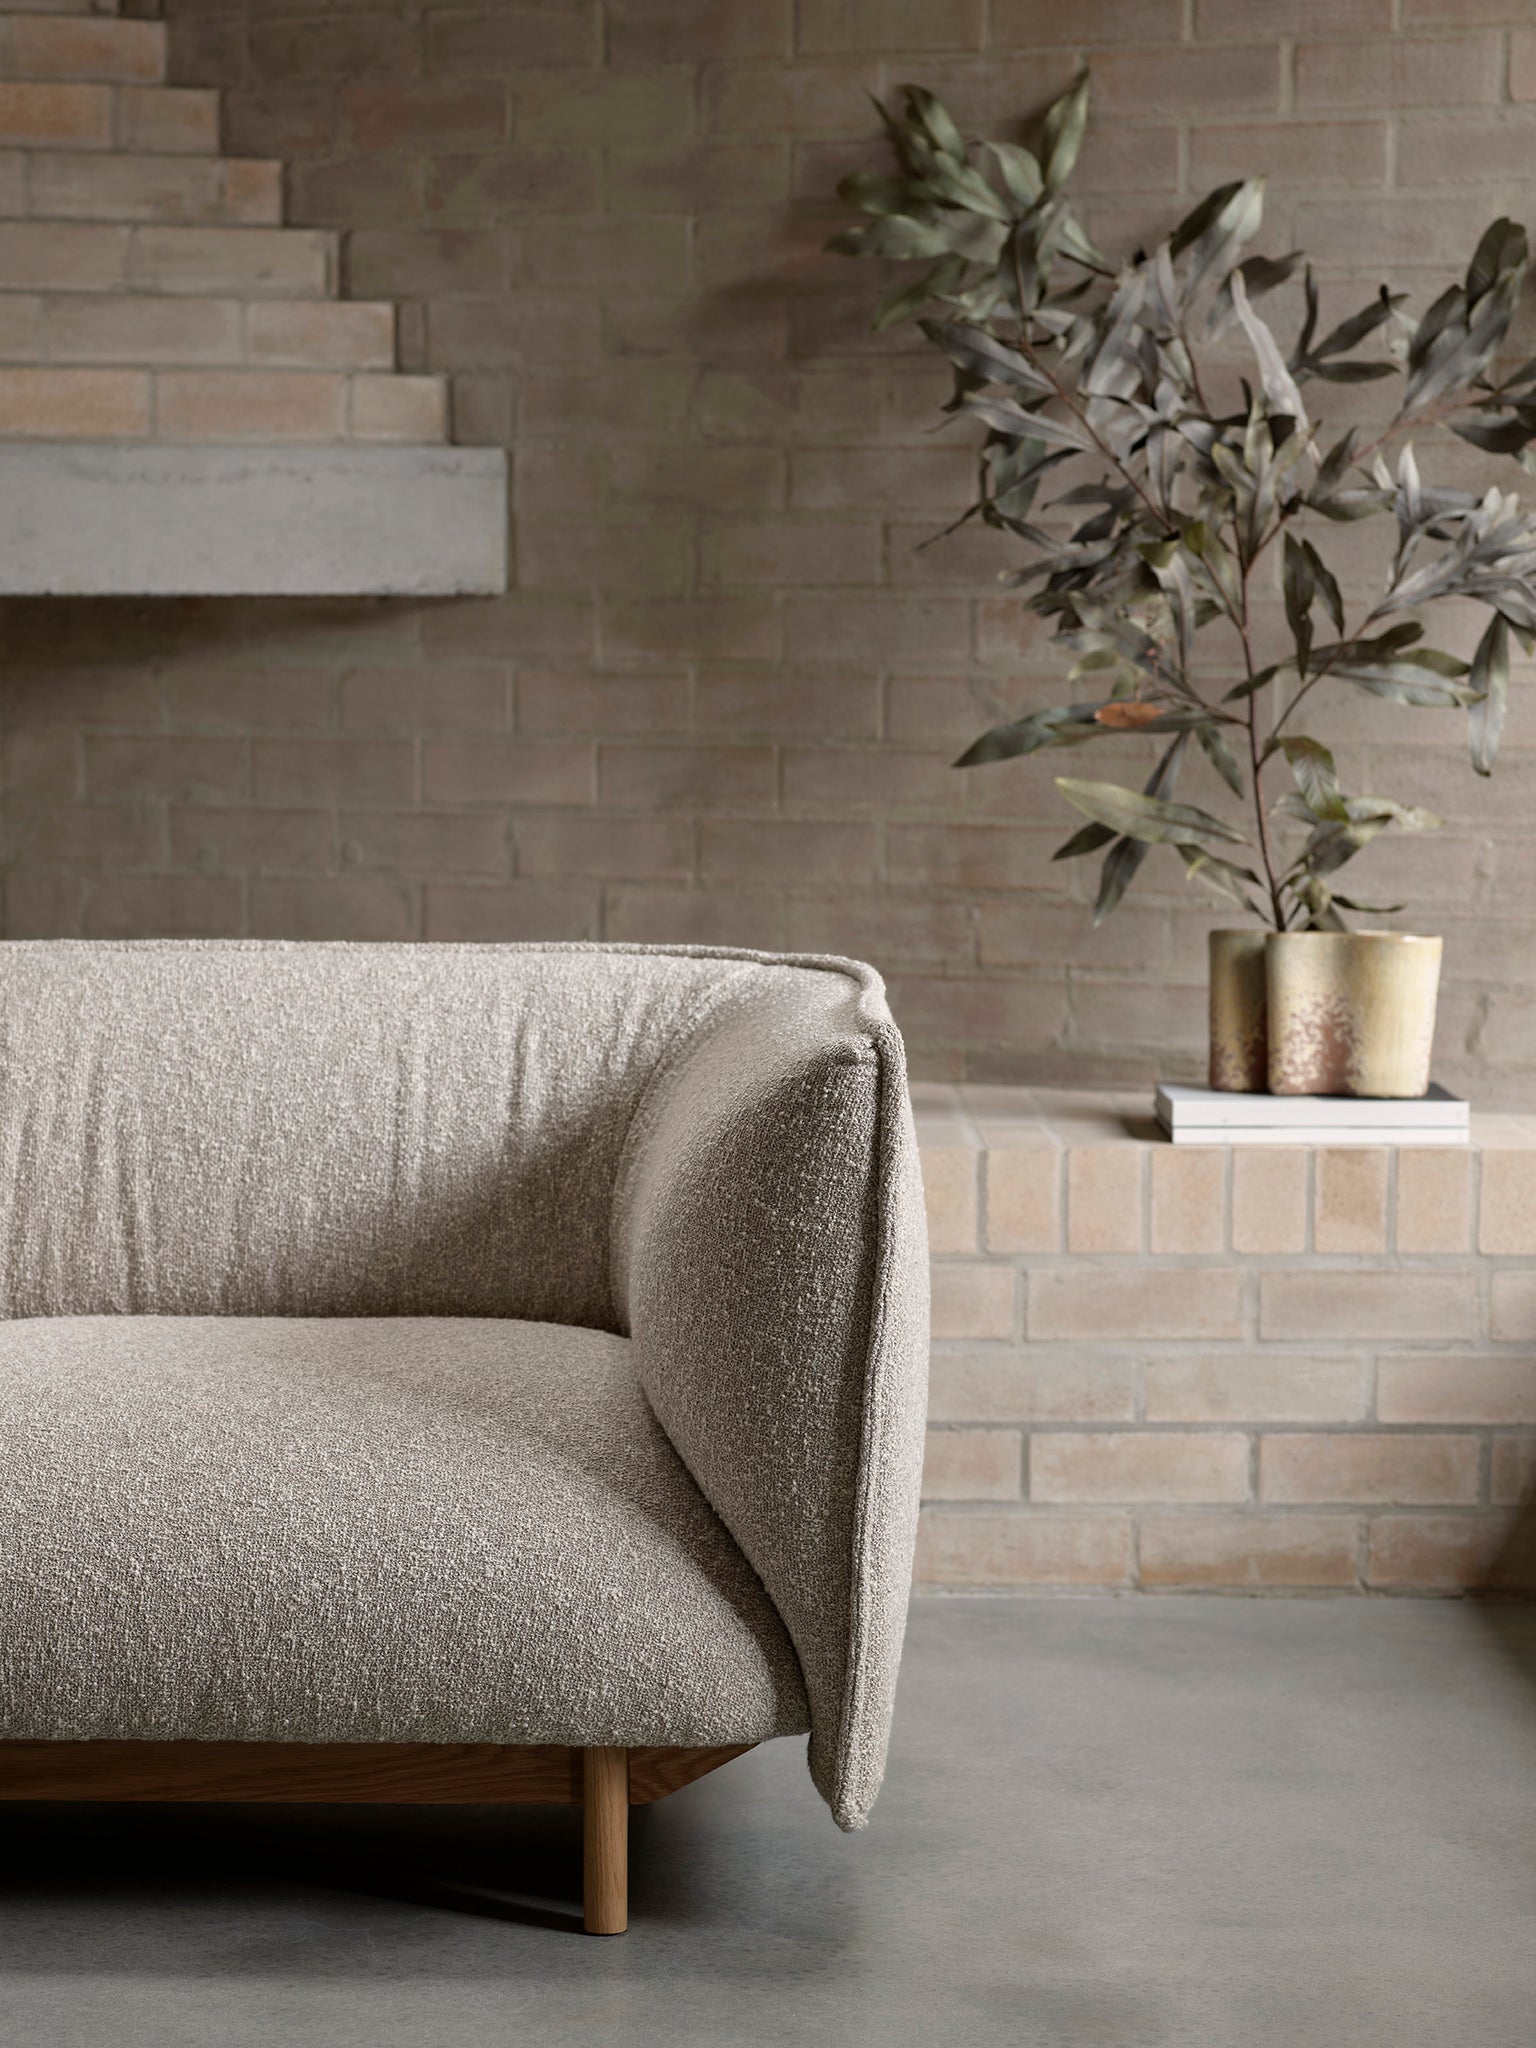 Mast furniture beam sofa in neutral tones